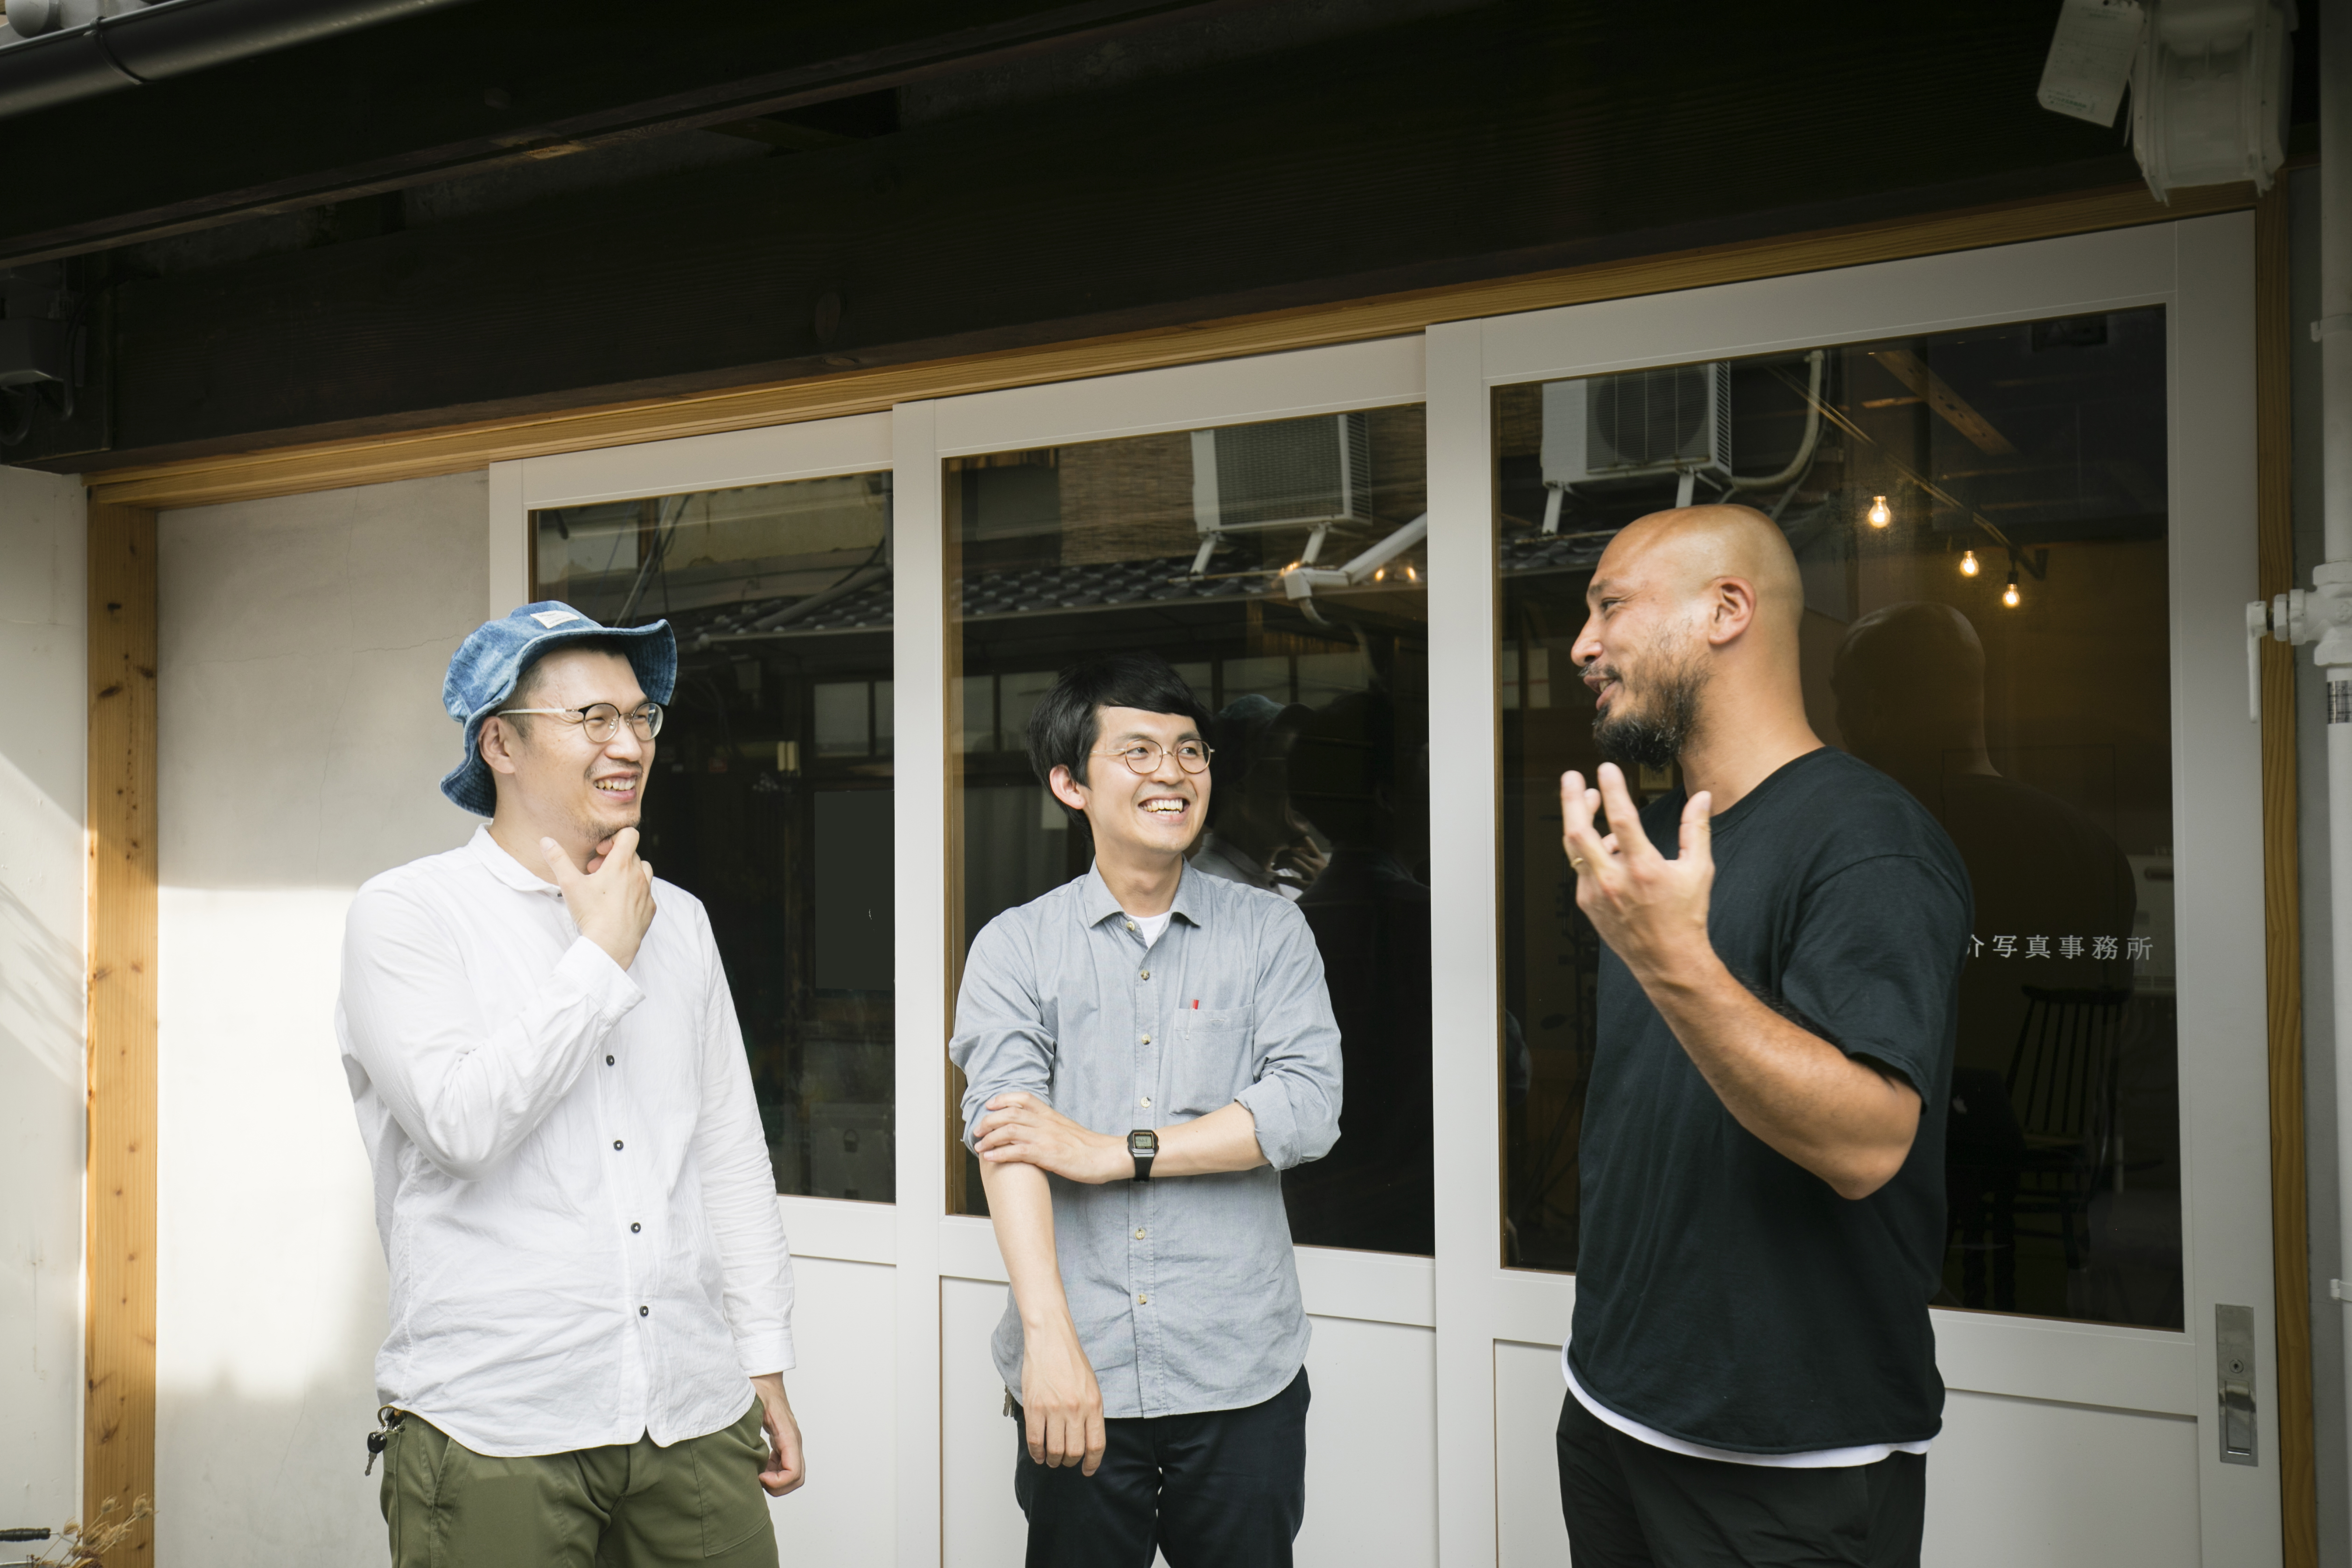 TANK代表の福元成武さん（右）と美術家の矢津吉隆さん（左）、建築家でありリサーチャーでもある榊原充大さん（中央）。